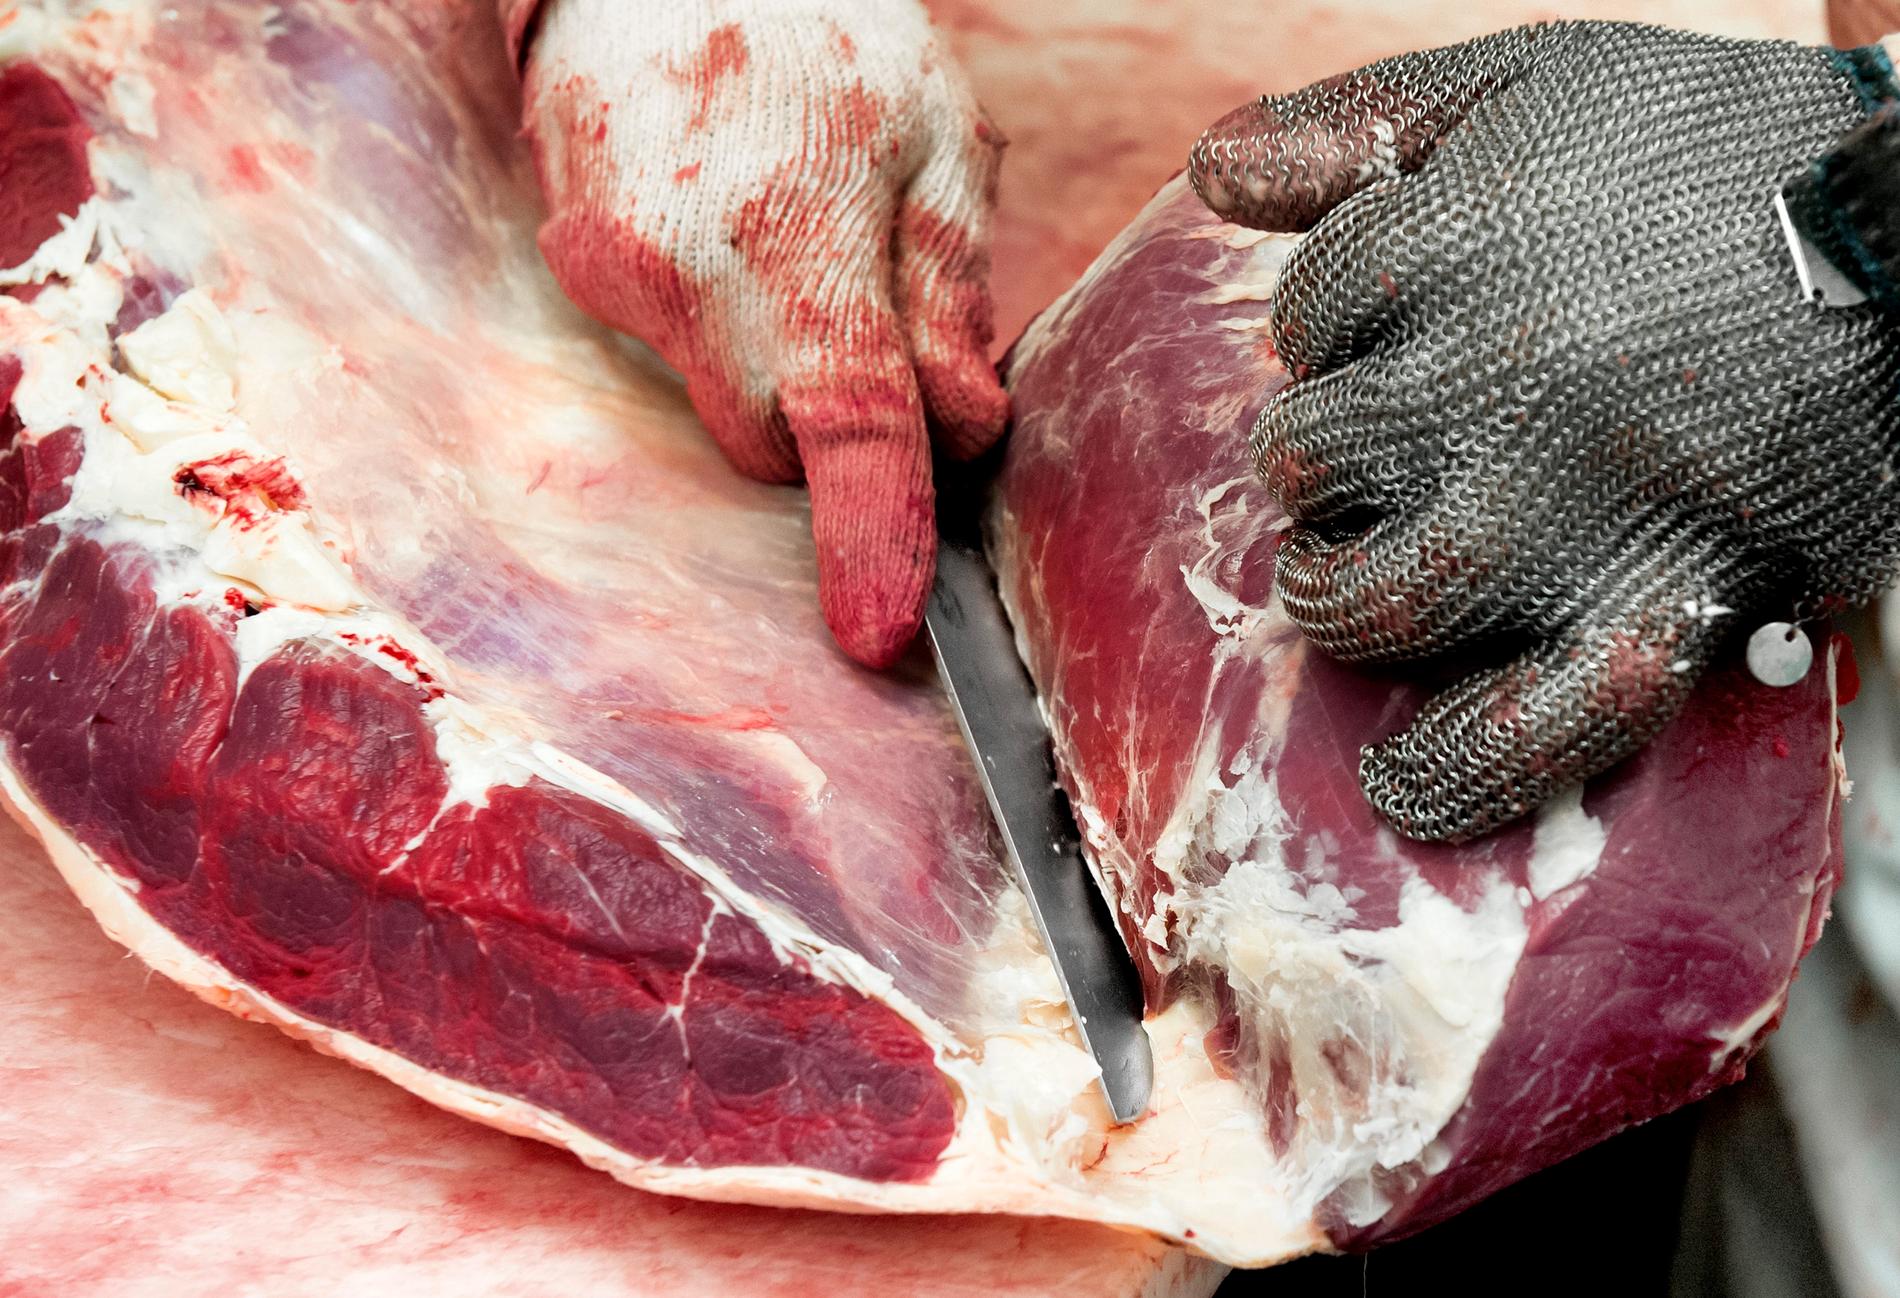 Enligt uppgift har 2 700 kilo polskt kött från sjuka djur sålts vidare till olika länder, däribland Sverige. Arkivbild.